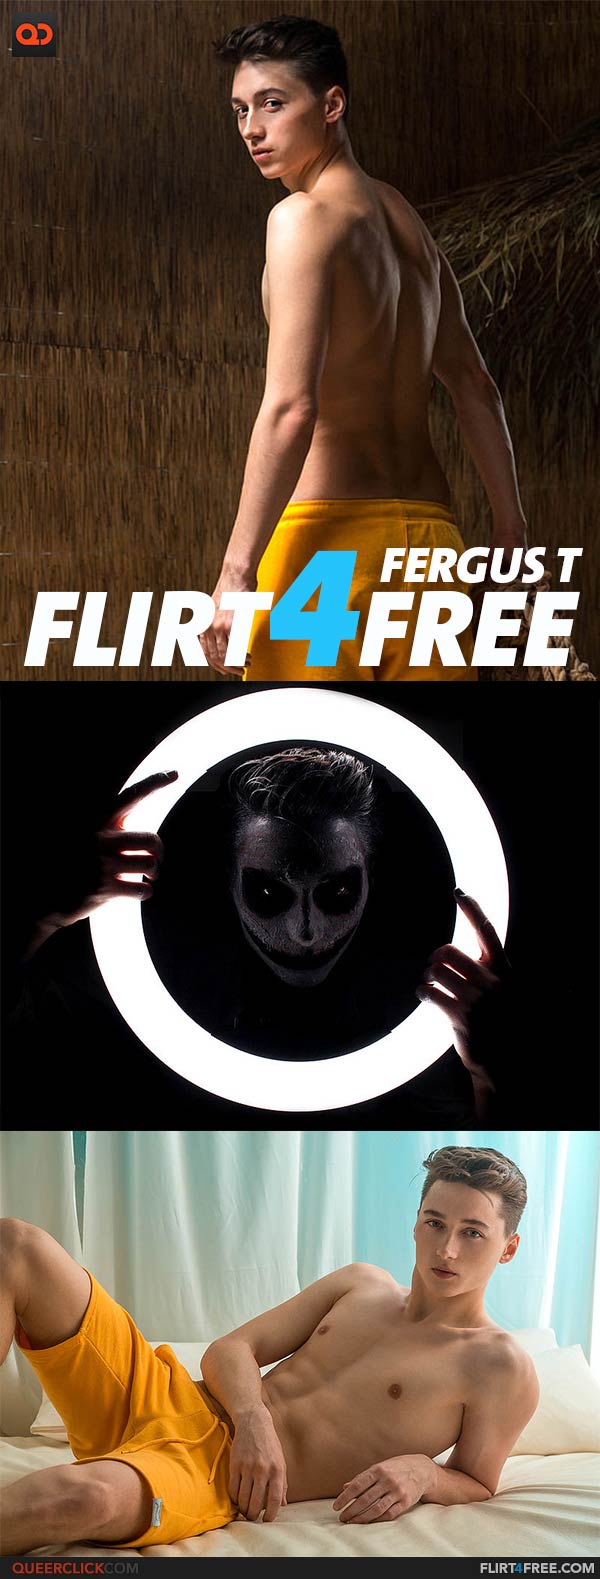 Flirt4Free: Fergus T